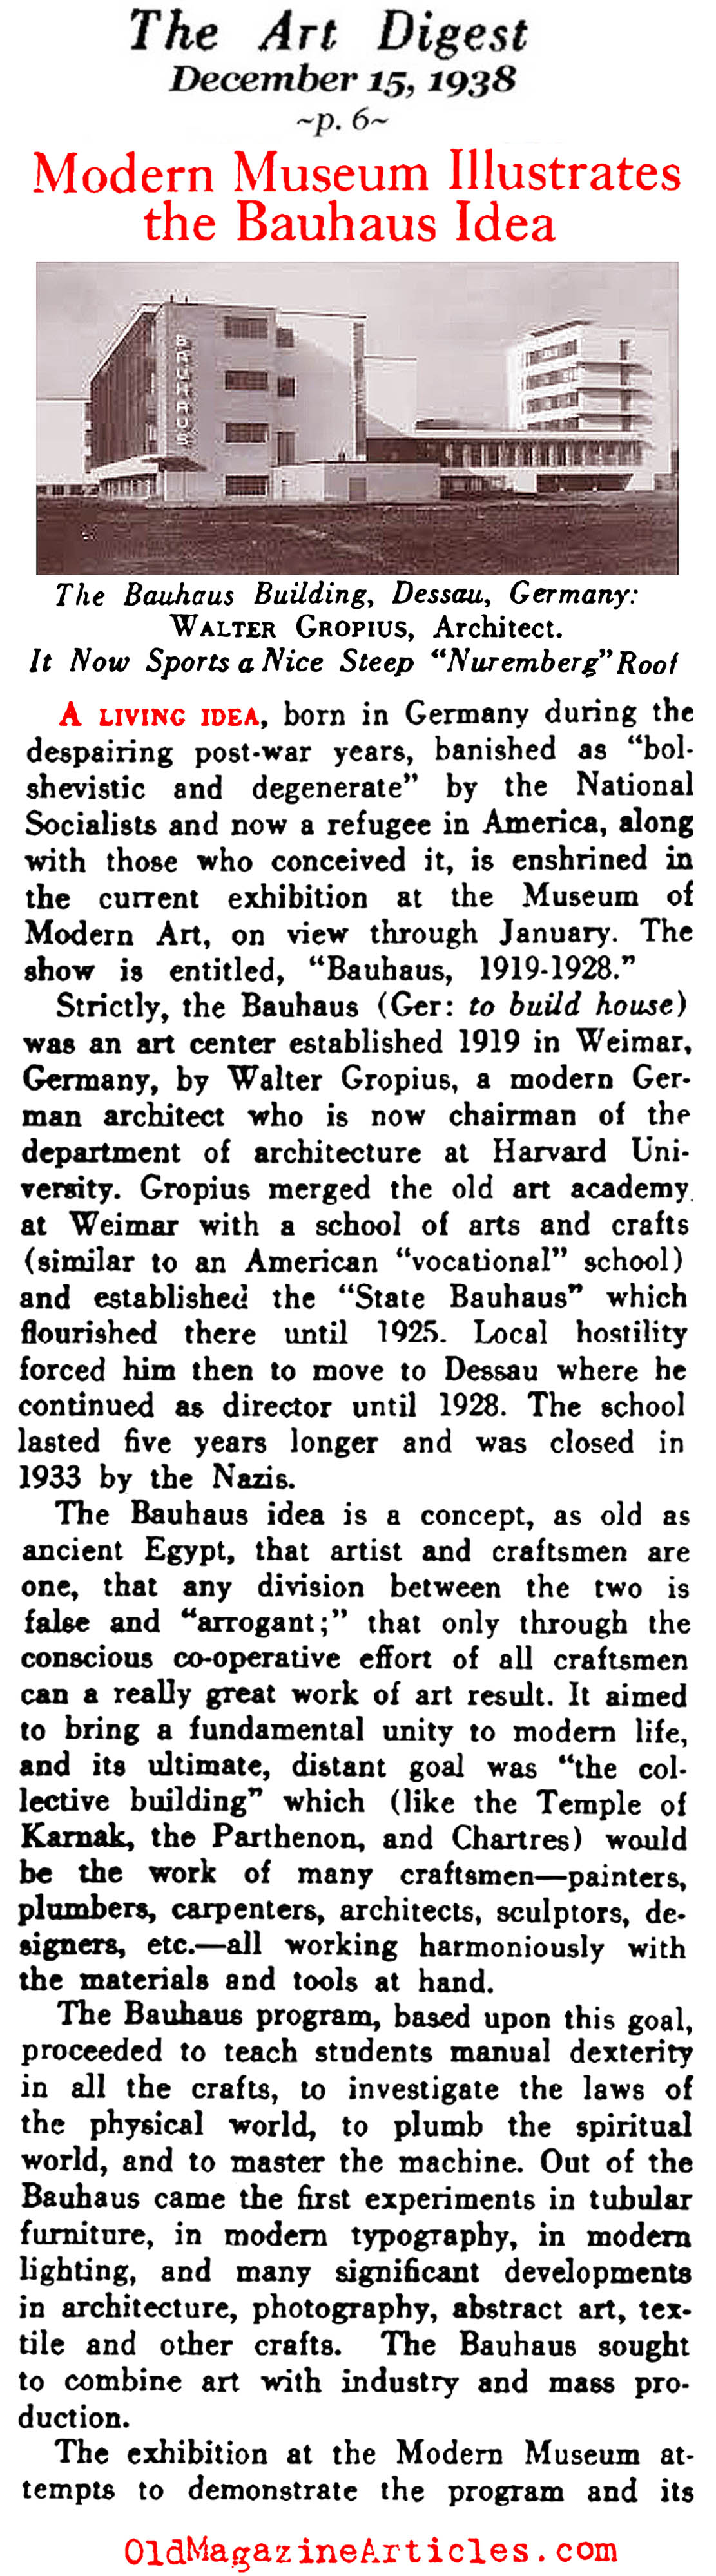 The Bauhaus Exhibit at the Museum of Modern Art  (Art Digest, 1938)